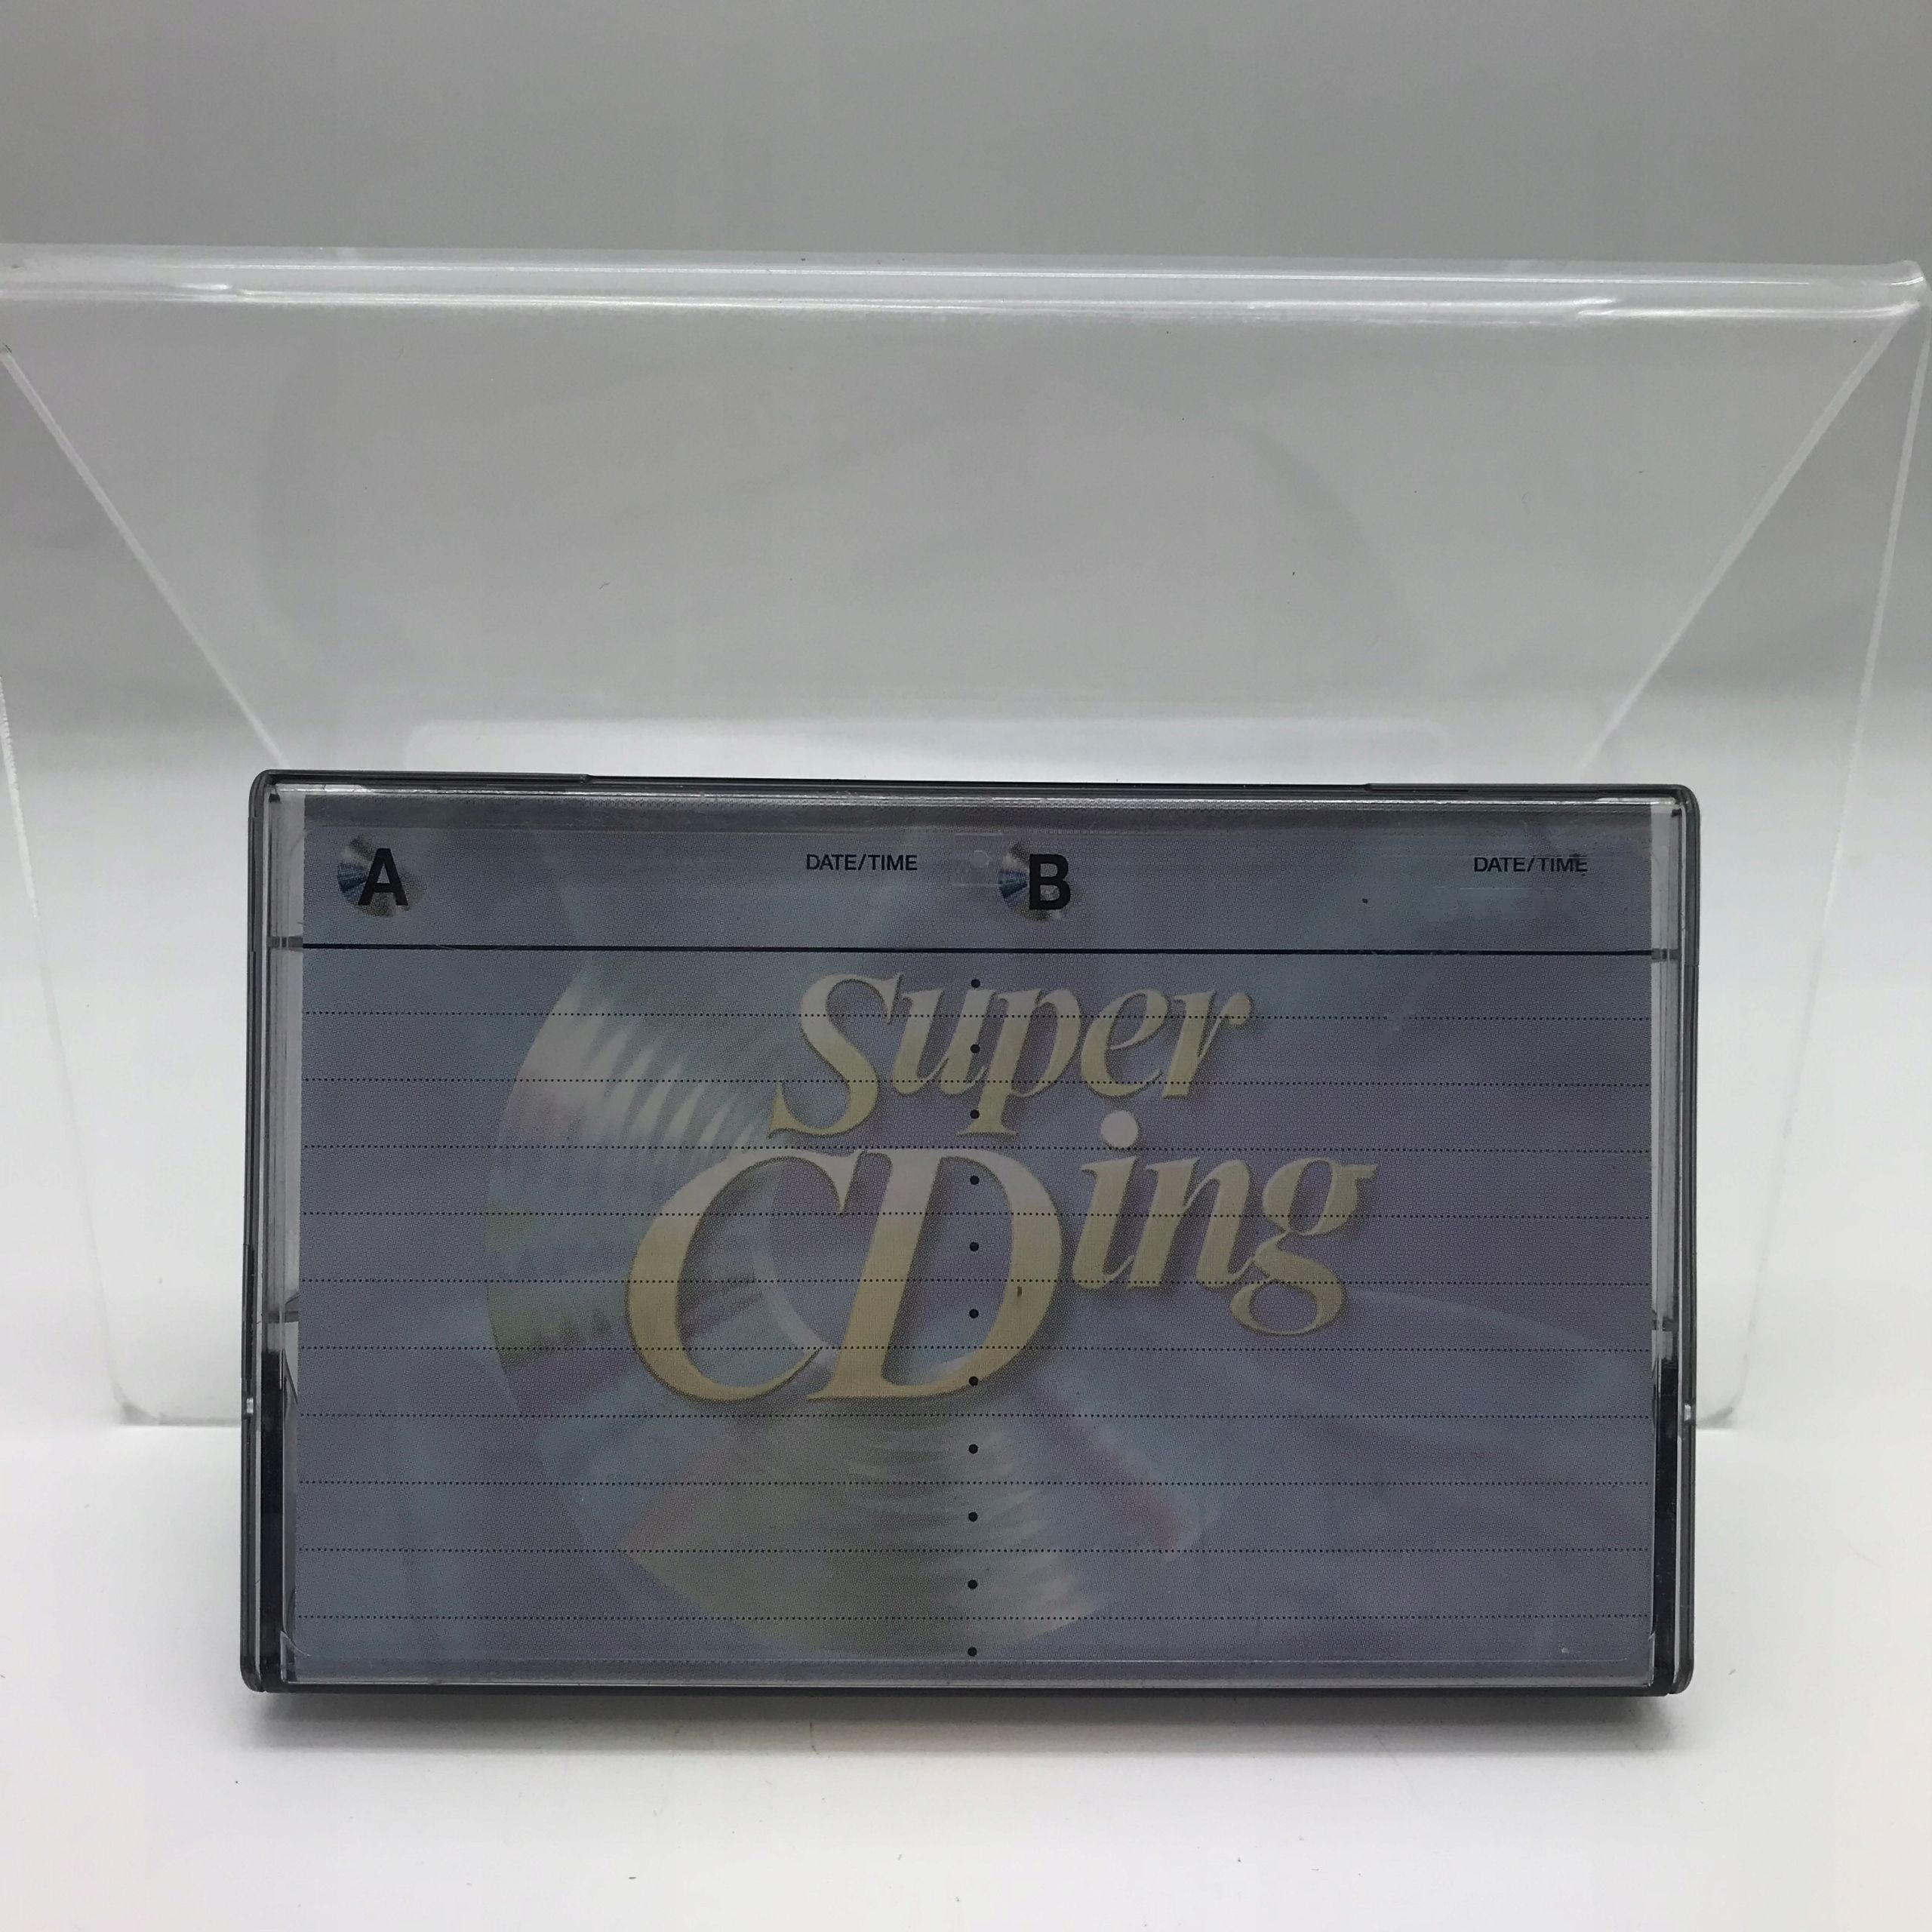 Kaseta magnetofonowa Tdk Super CDing 90